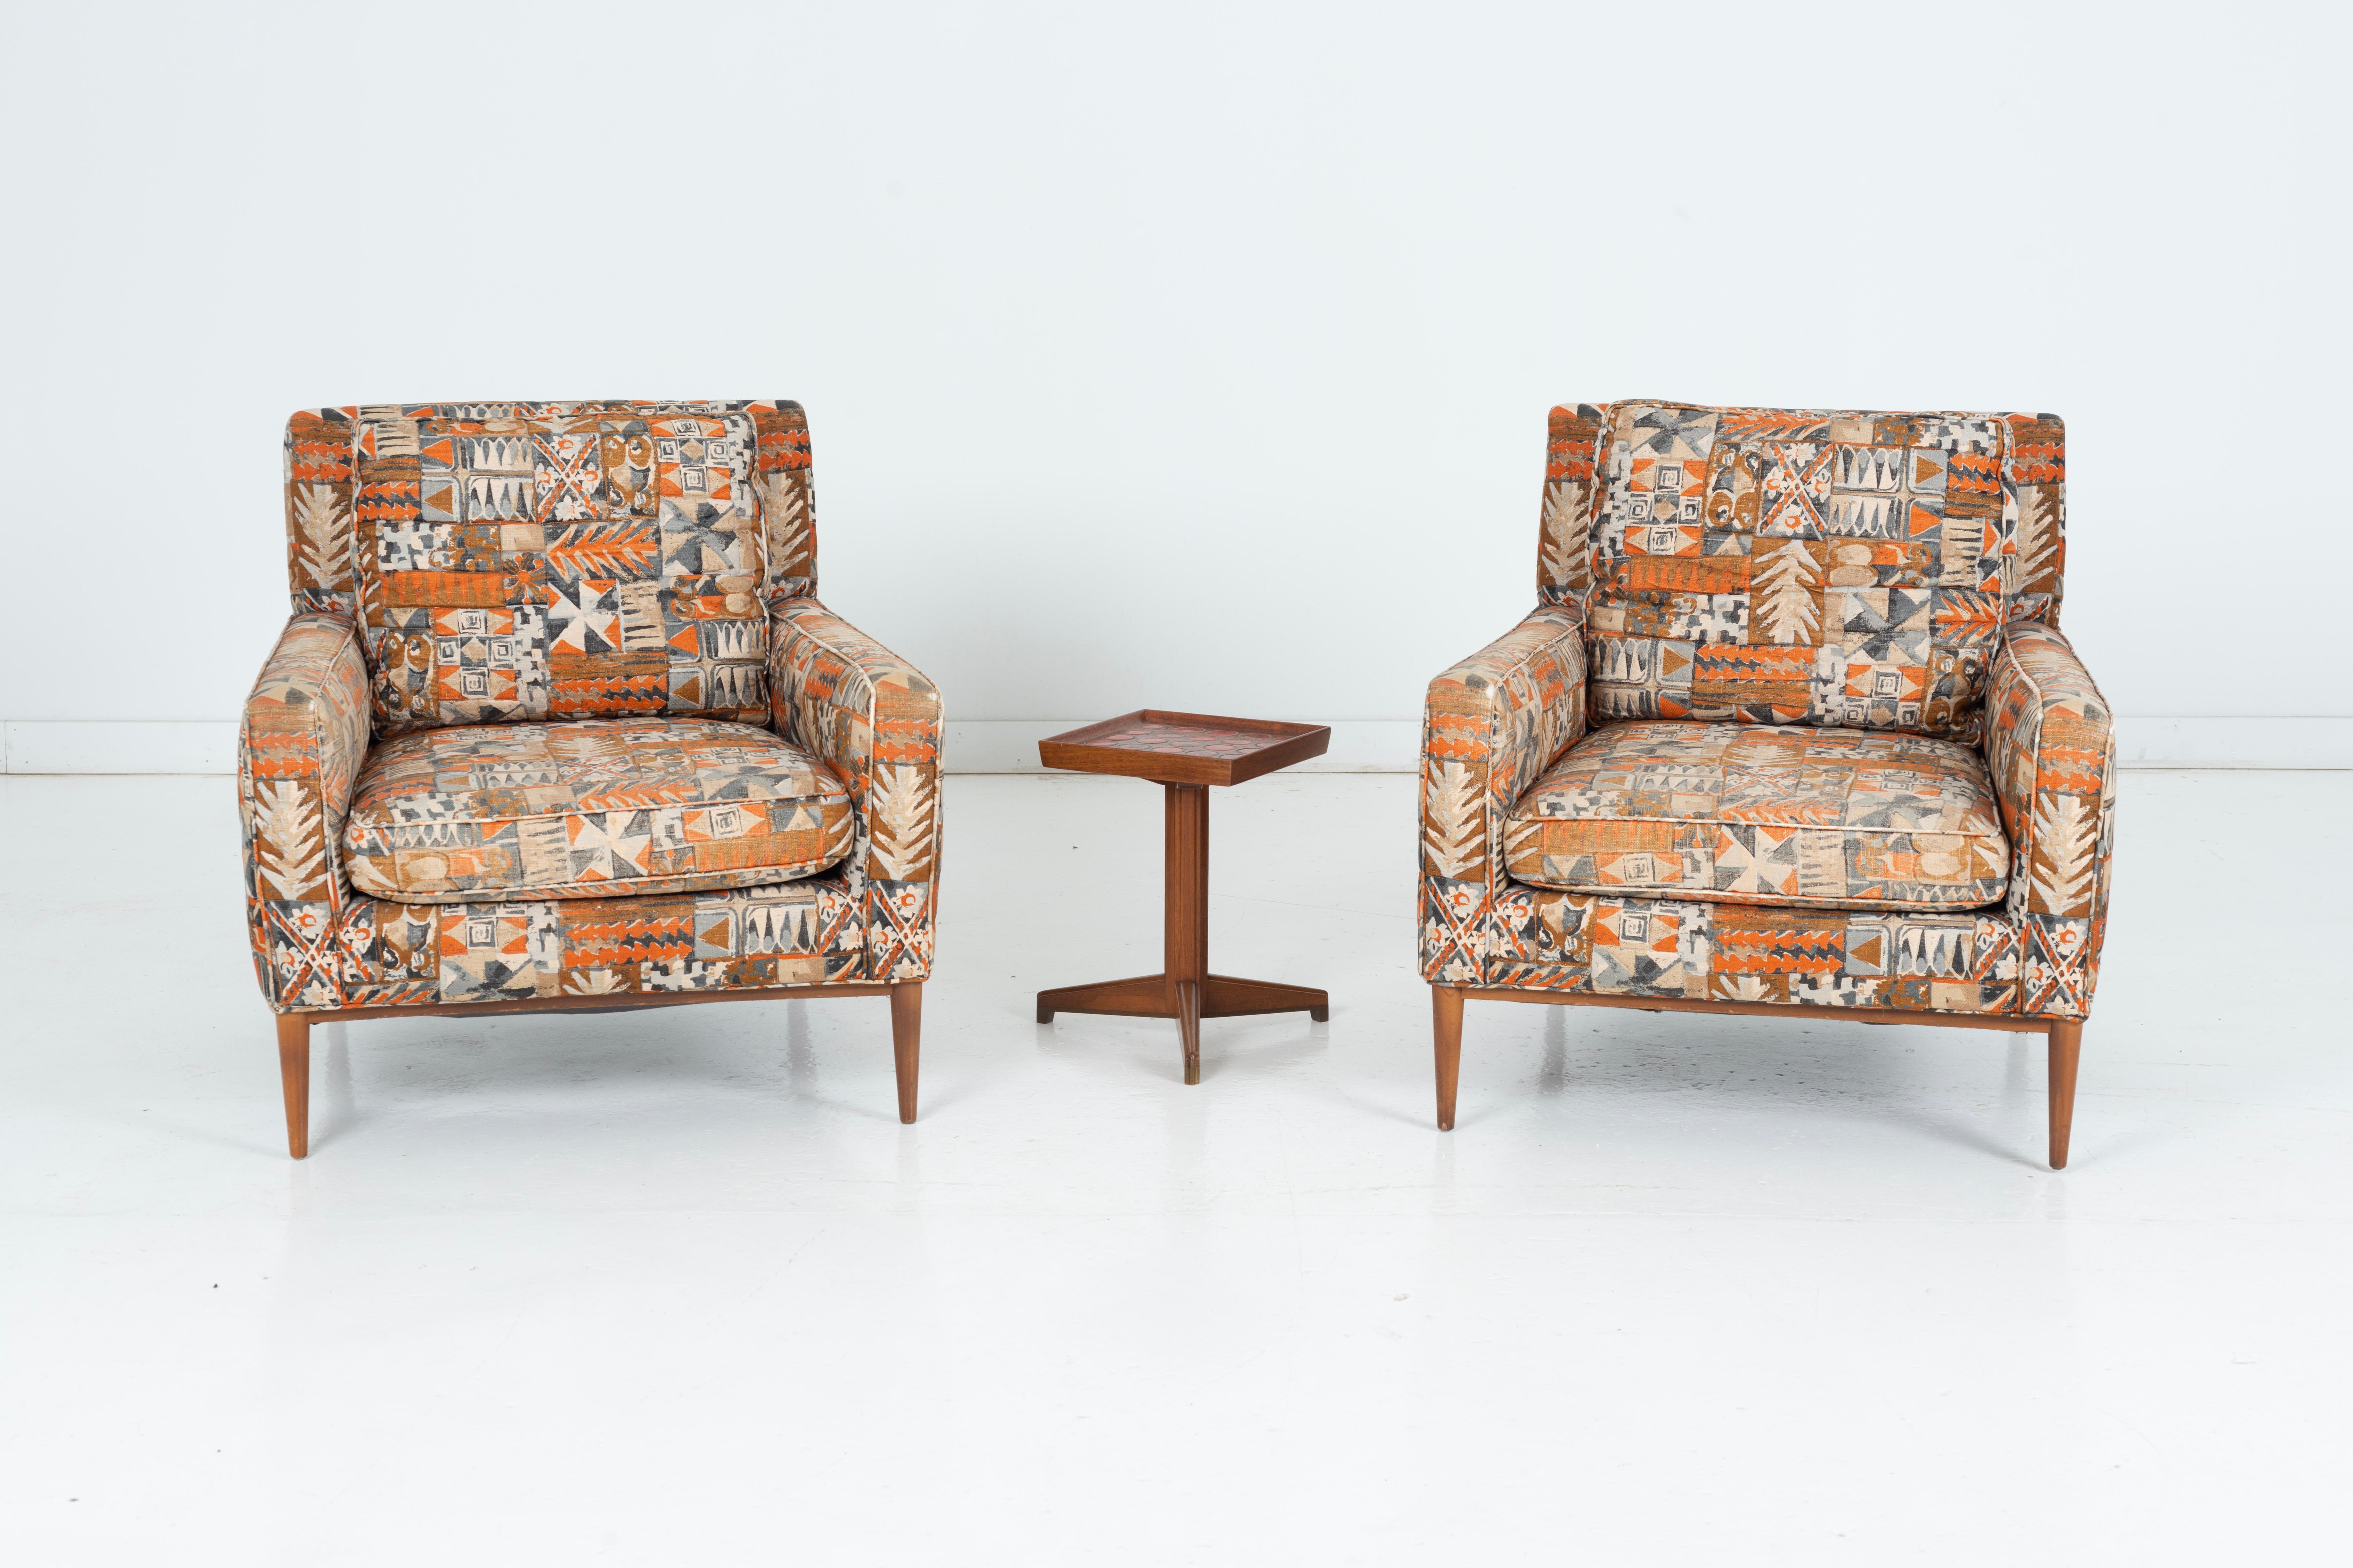 Voici une superbe paire de fauteuils Lounge Paul/One, incarnant l'élégance épurée et la sophistication du design Mid-Century Modern. Ces chaises emblématiques sont dotées d'une solide base en bois d'érable, délicatement travaillée pour mettre en